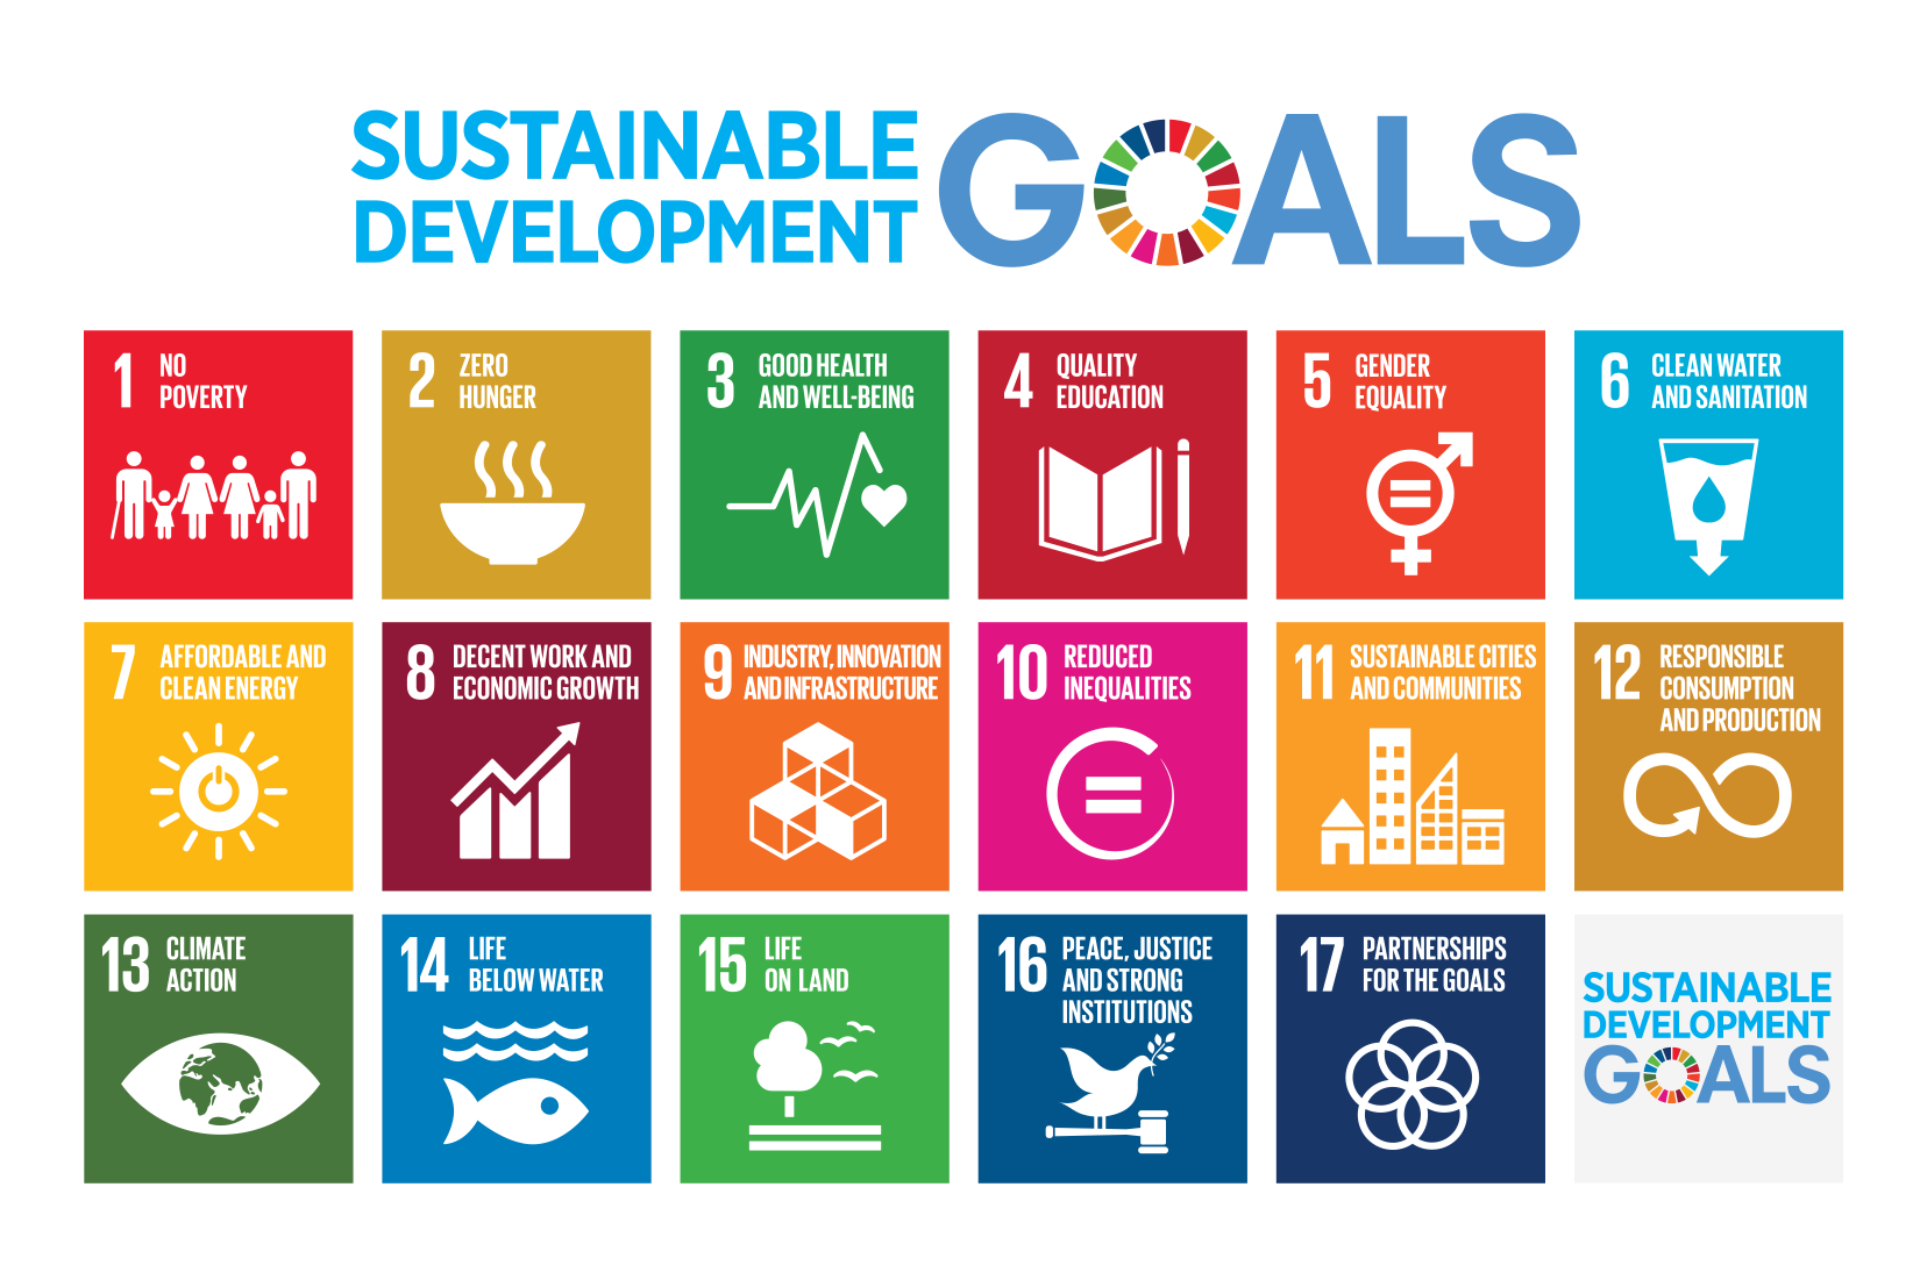 17 устойчивых целей оон. Цели ООН В области устойчивого развития до 2030. 17 Целей устойчивого развития ЦУР ООН. Цели устойчивого развития ООН 2015-2030. Цели устойчивого развития на период до 2030 года.